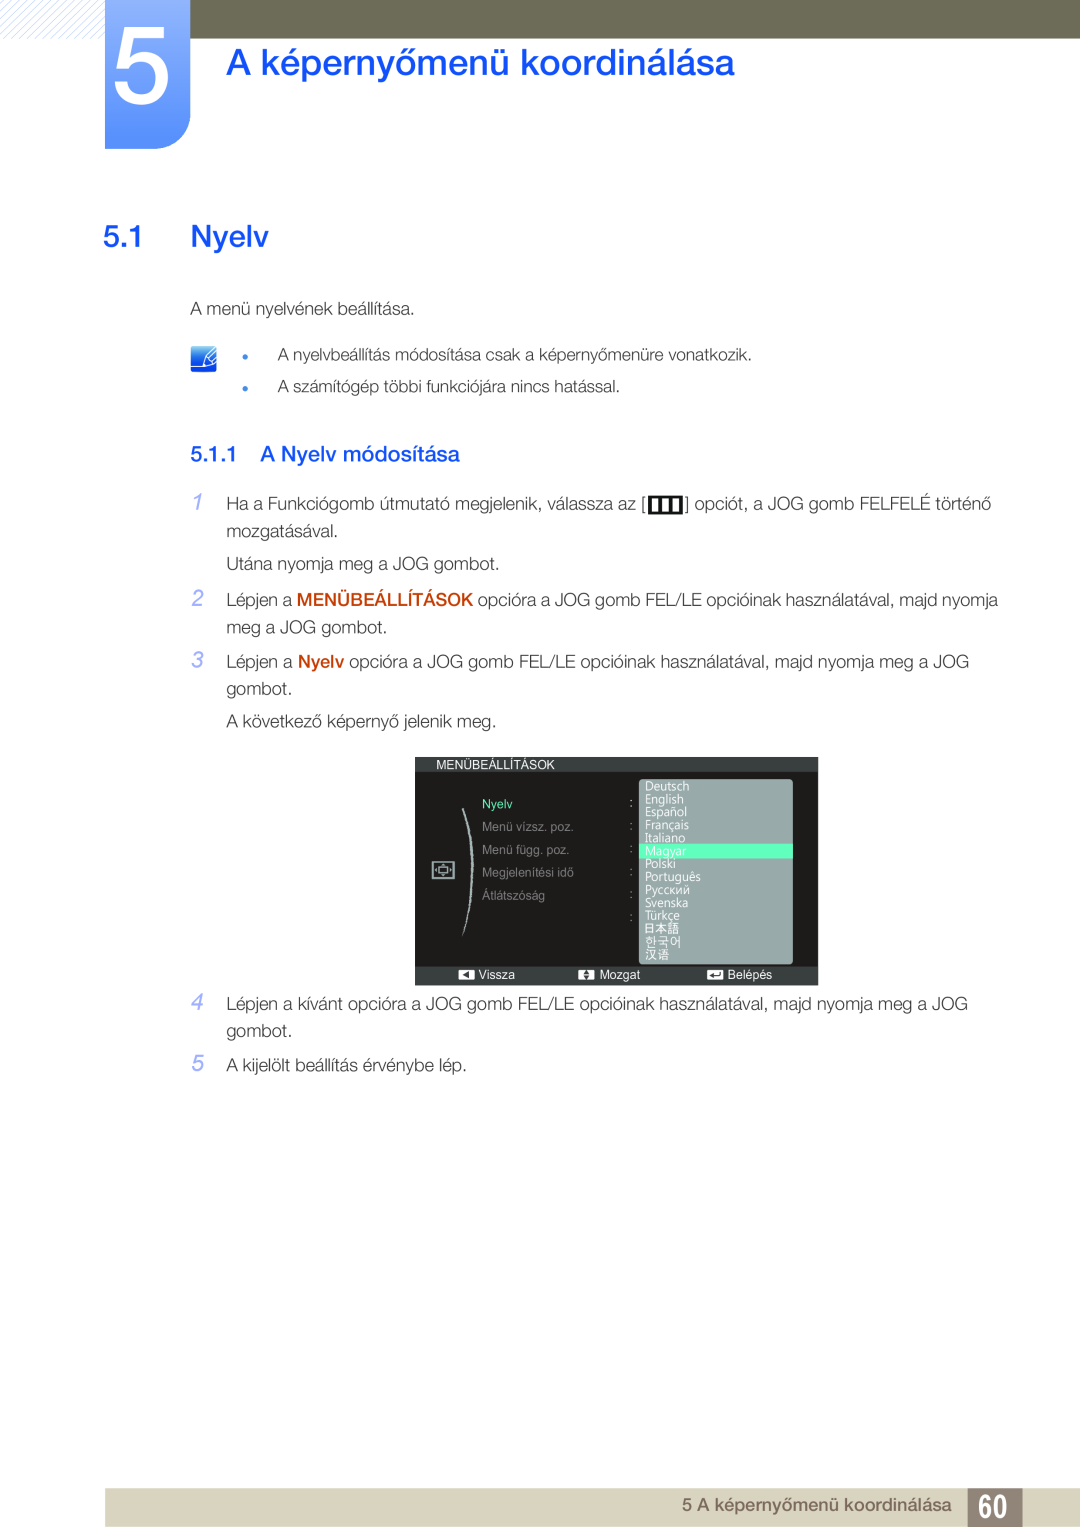 Samsung LS24C550VL/EN manual 5 A képernyőmenü koordinálása, A Nyelv módosítása 